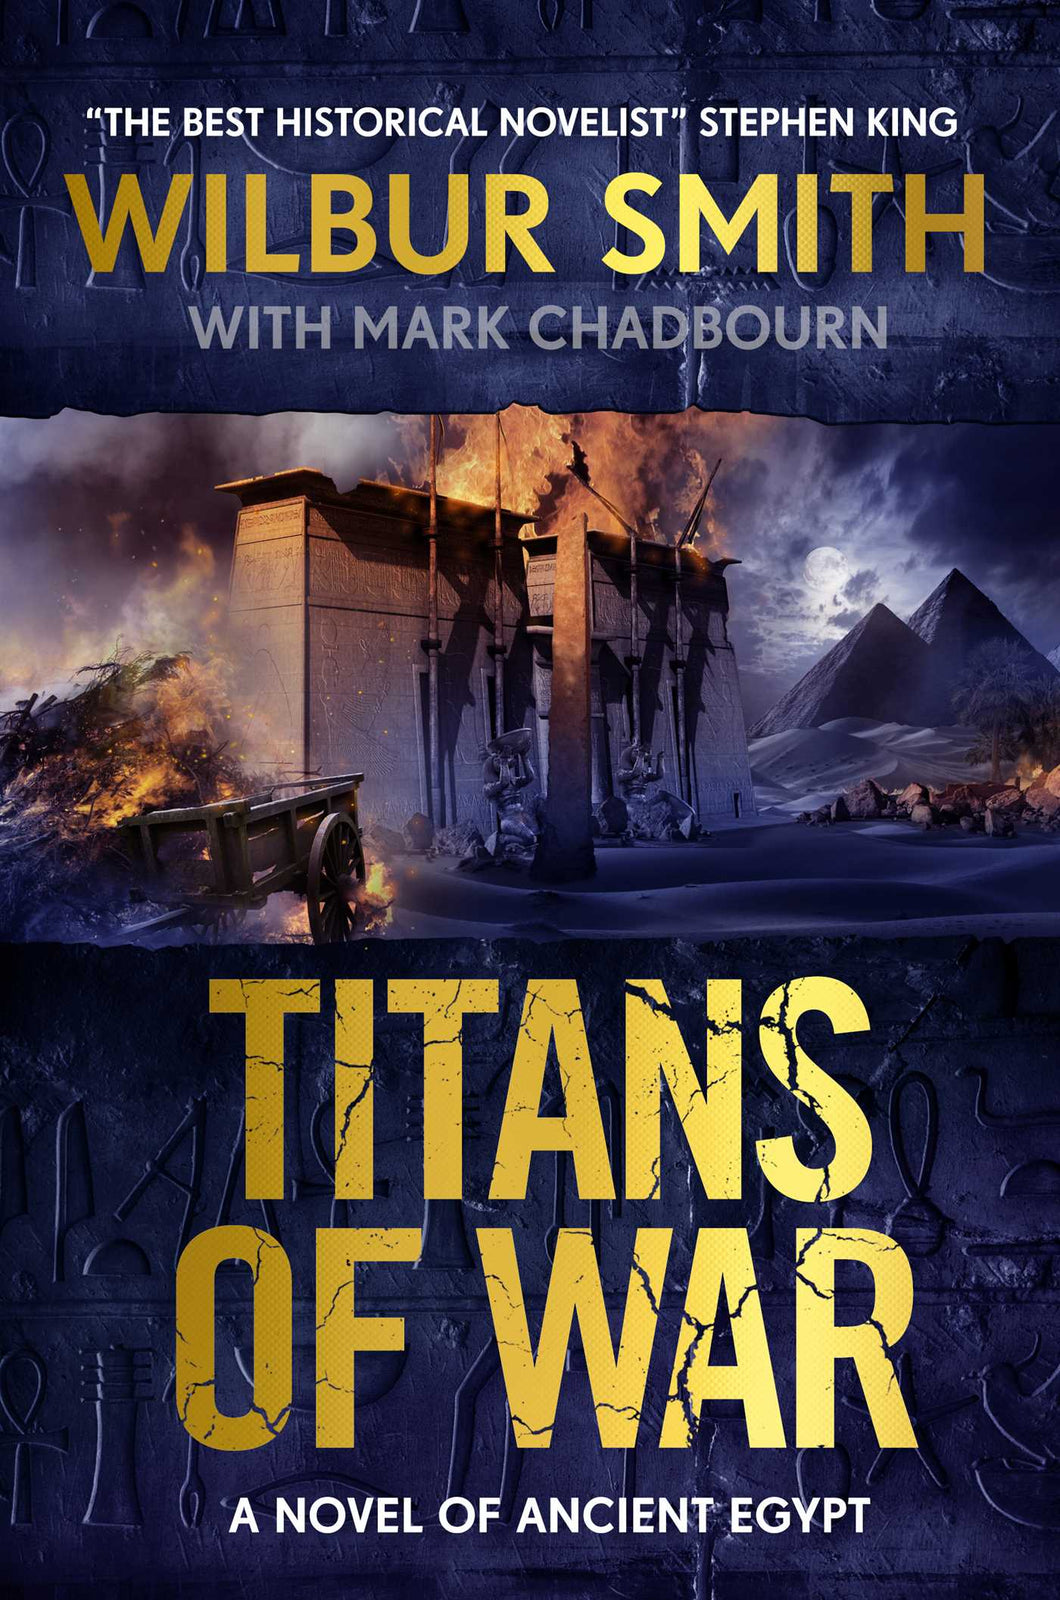 Titans of War